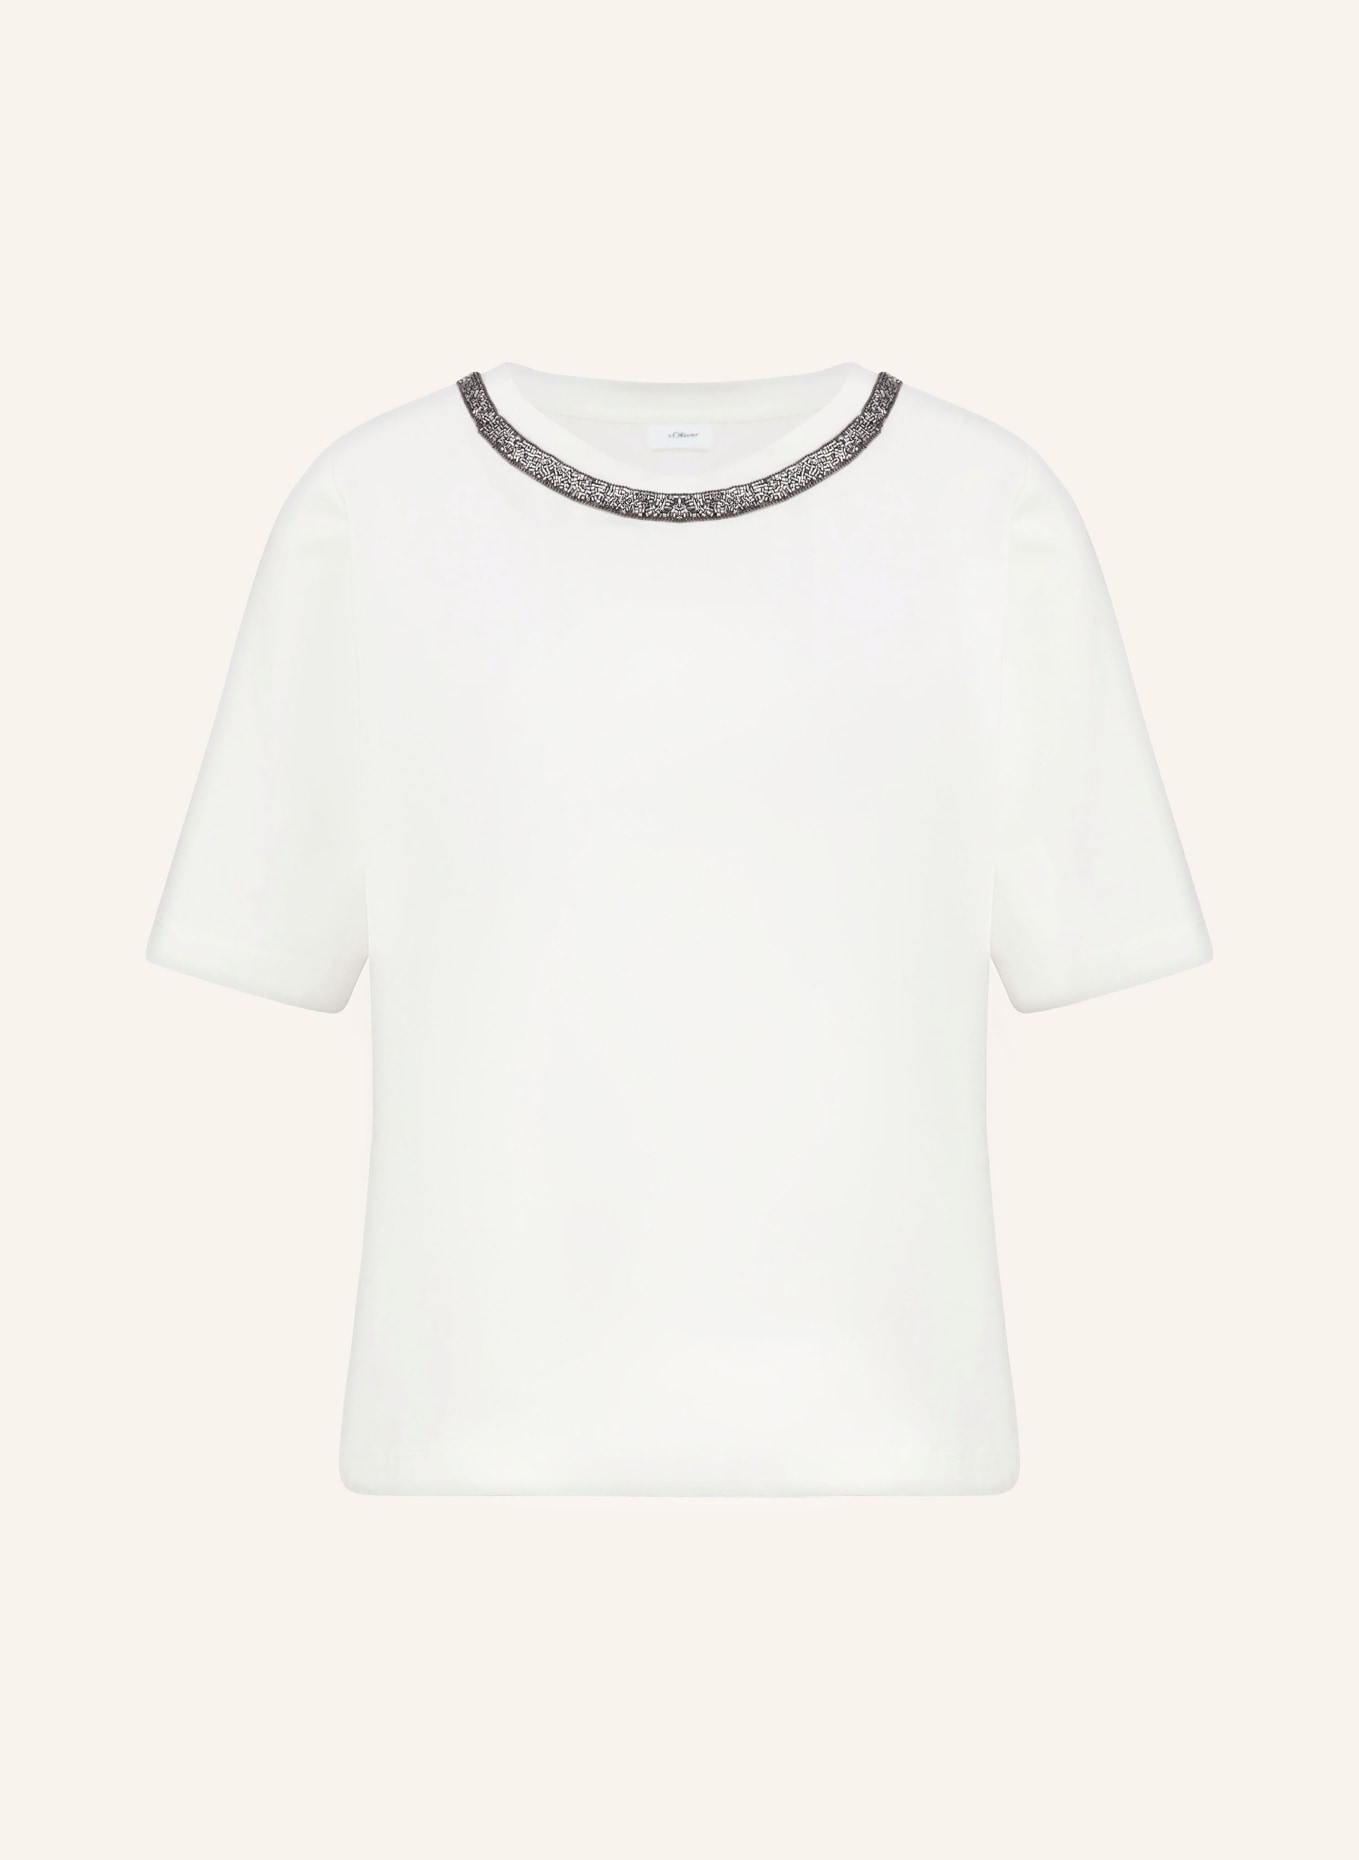 s.Oliver BLACK LABEL T-Shirt mit Schmucksteinen, Farbe: WEISS (Bild 1)